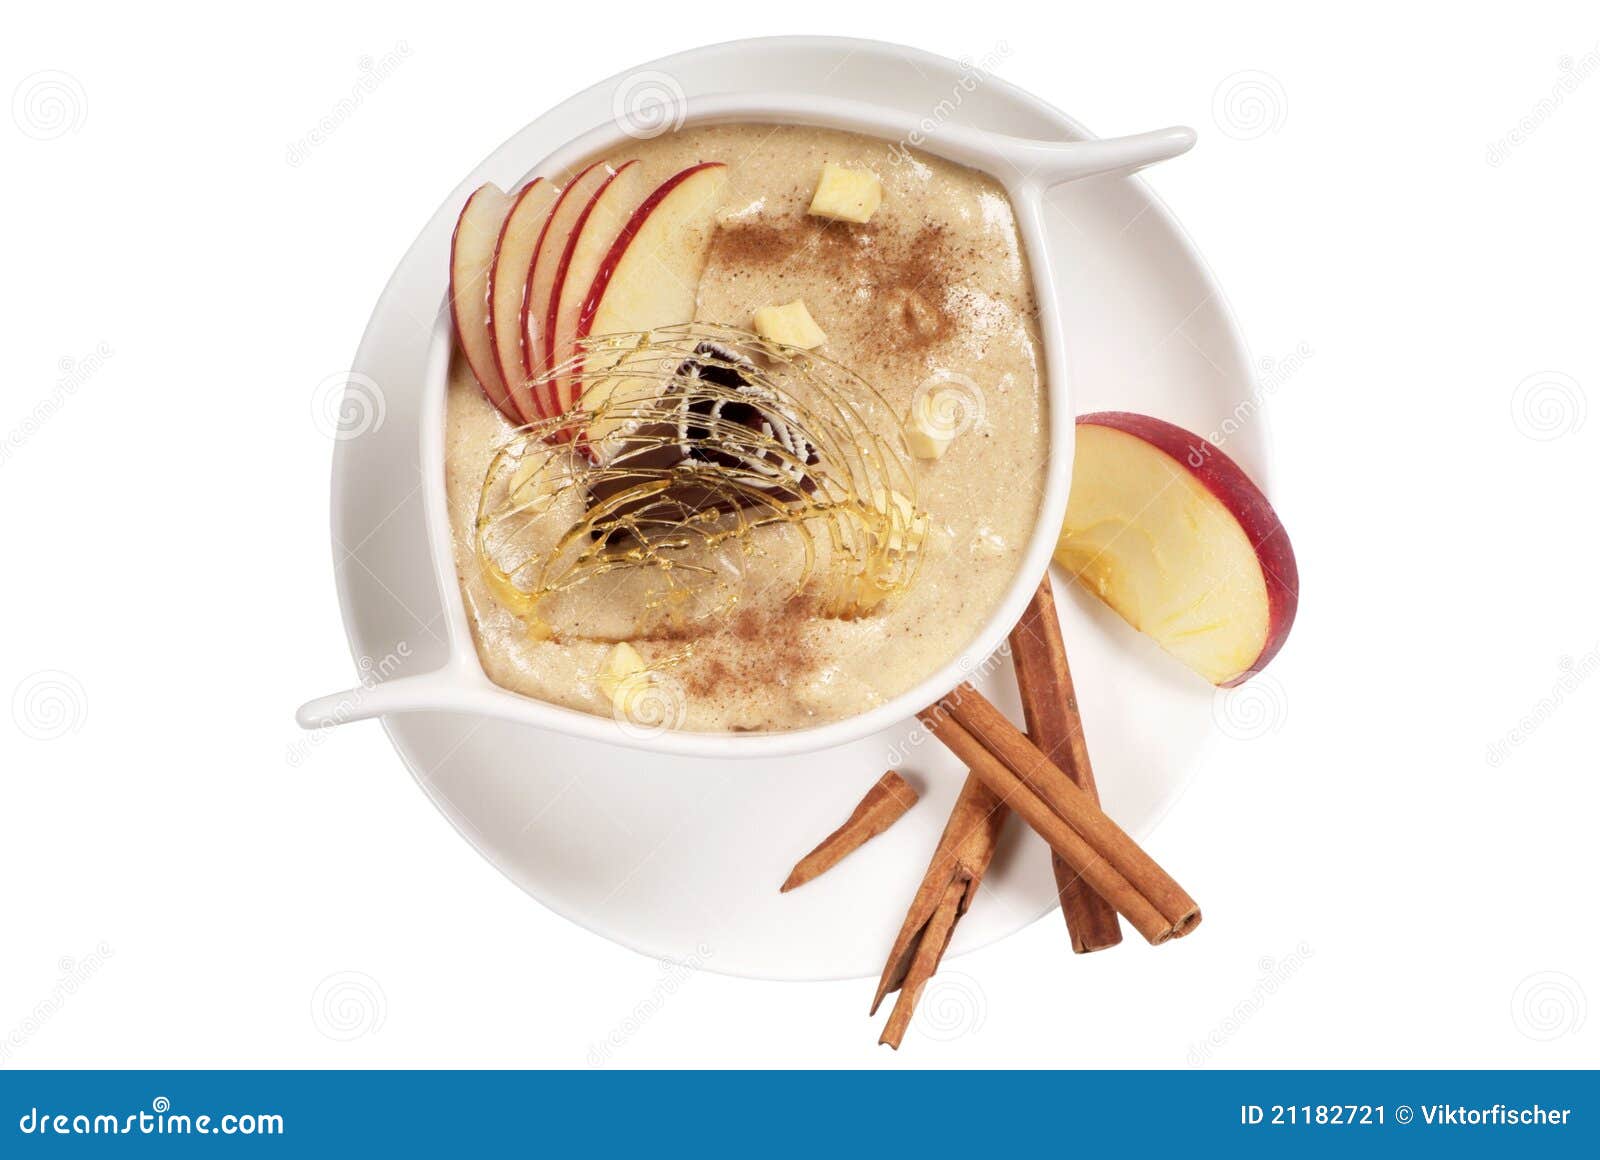 苹果饼点心 库存图片. 图片 包括有 食物, 点心, 织地不很细, 史密斯, 土气, 塑造, 申请人, 纹理 - 27312759